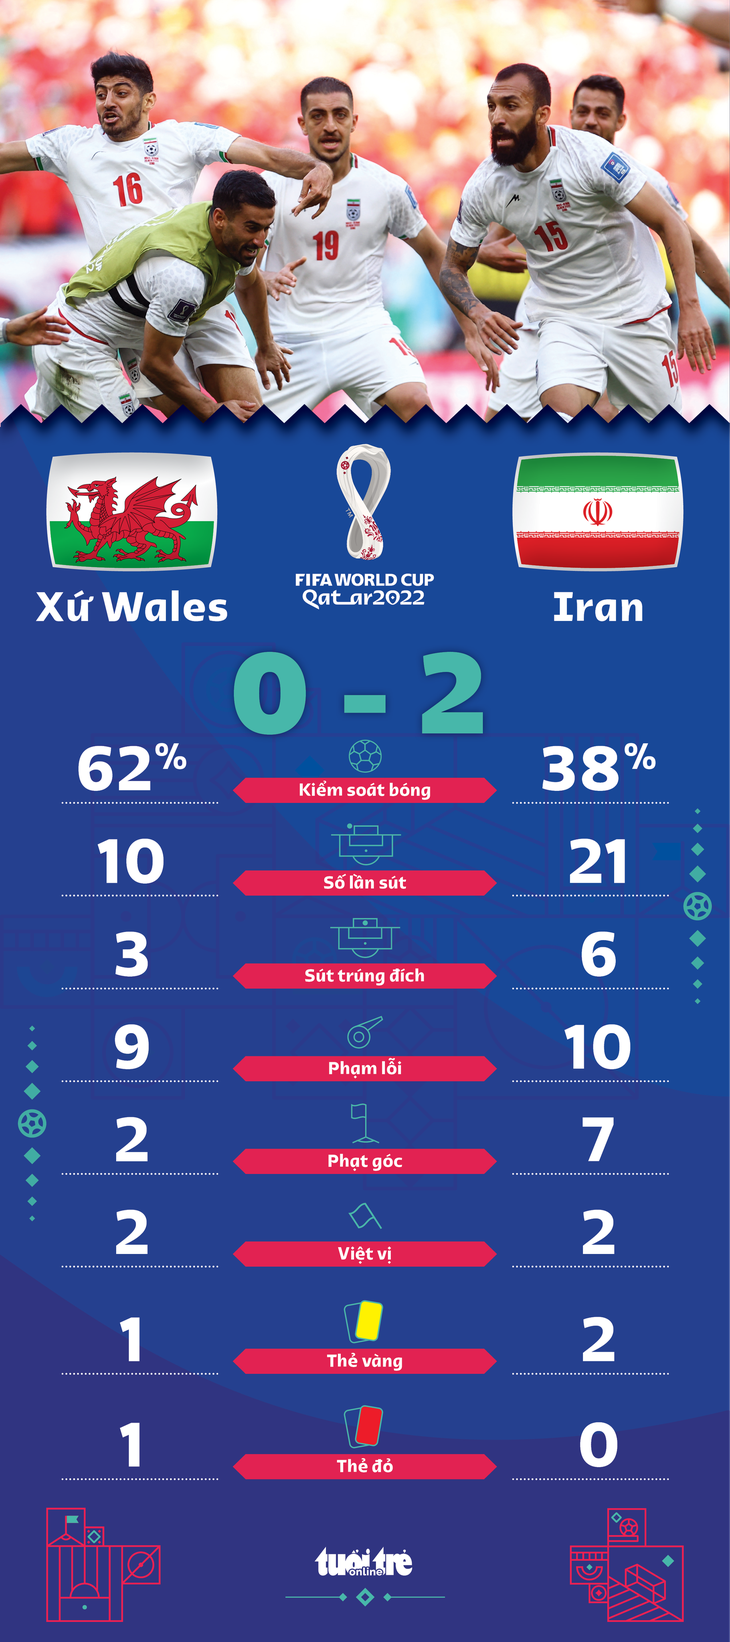 Ghi 2 bàn phút bù giờ, Iran thắng xứng đáng 10 người Xứ Wales - Ảnh 2.